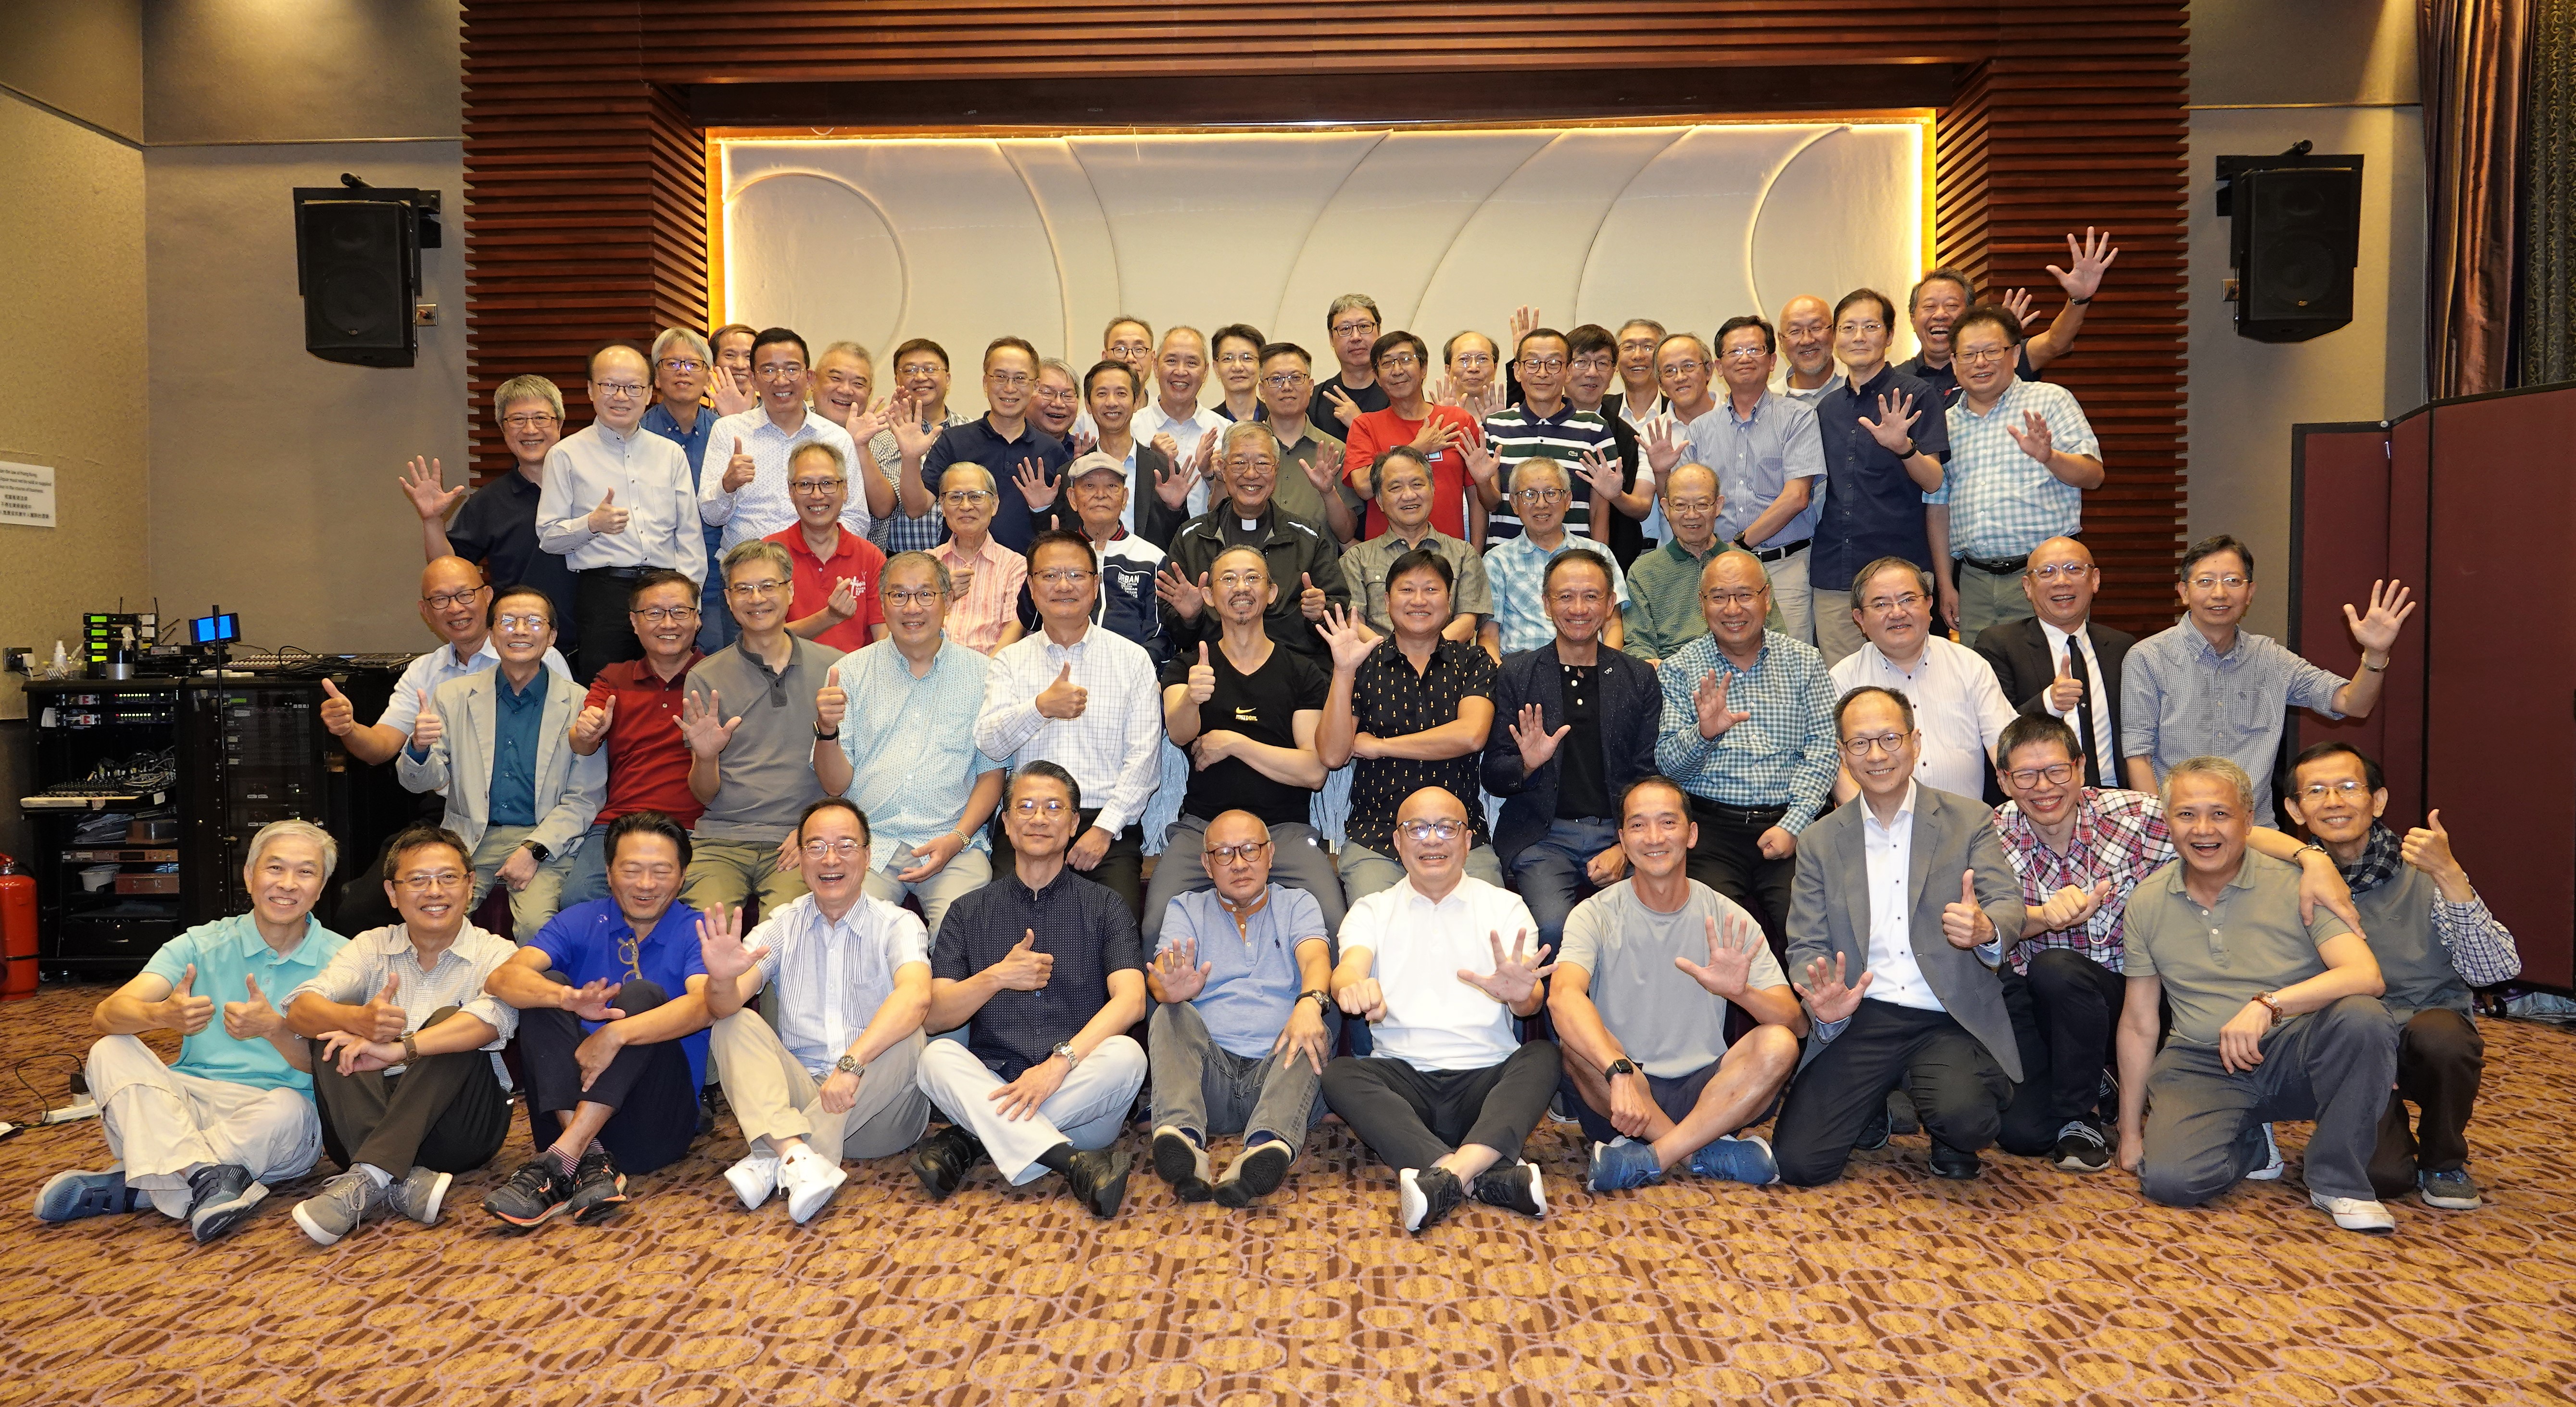 Class of '78 Reunion in Hong Kong